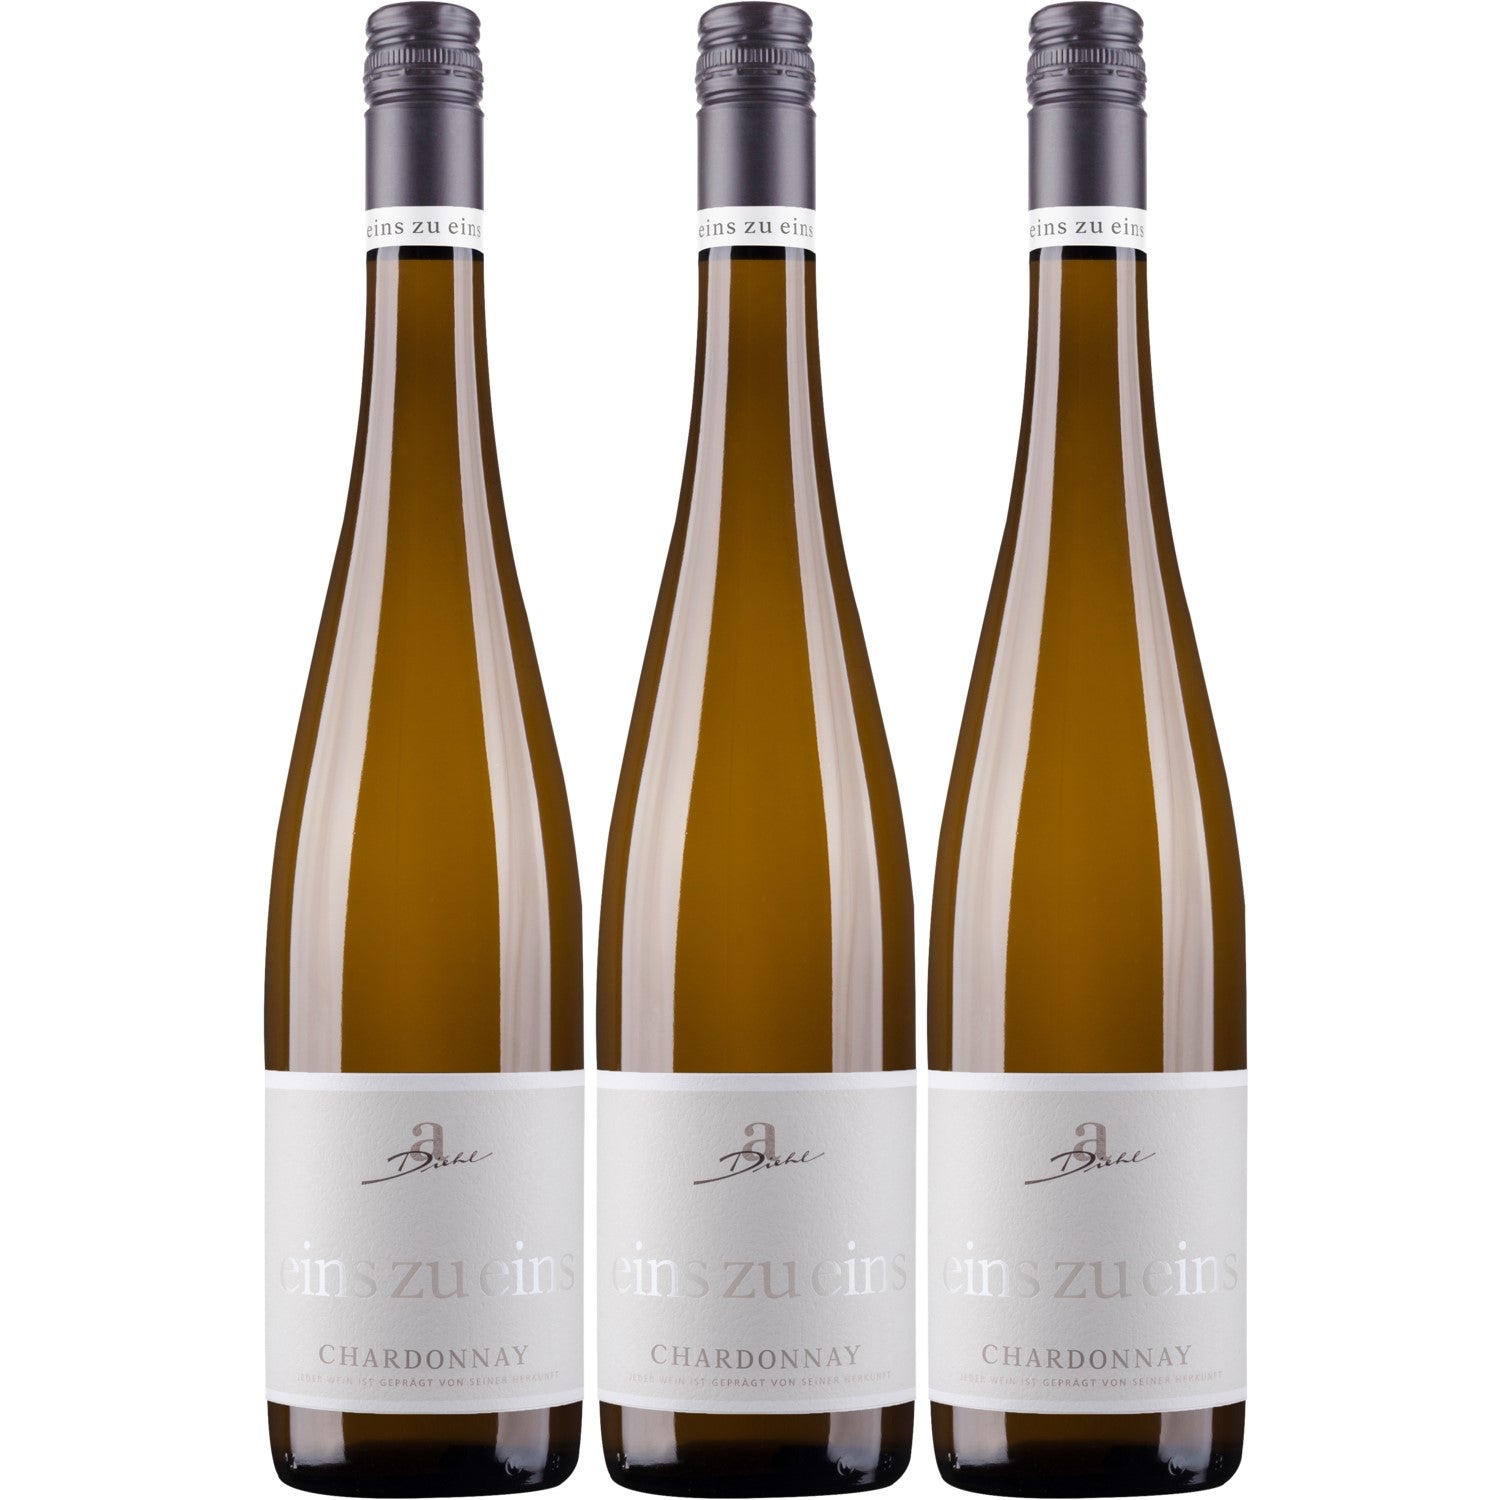 A. Diehl Chardonnay eins zu eins Kabinett Weißwein Wein trocken (3 x 0.75l) - Versanel - Wein